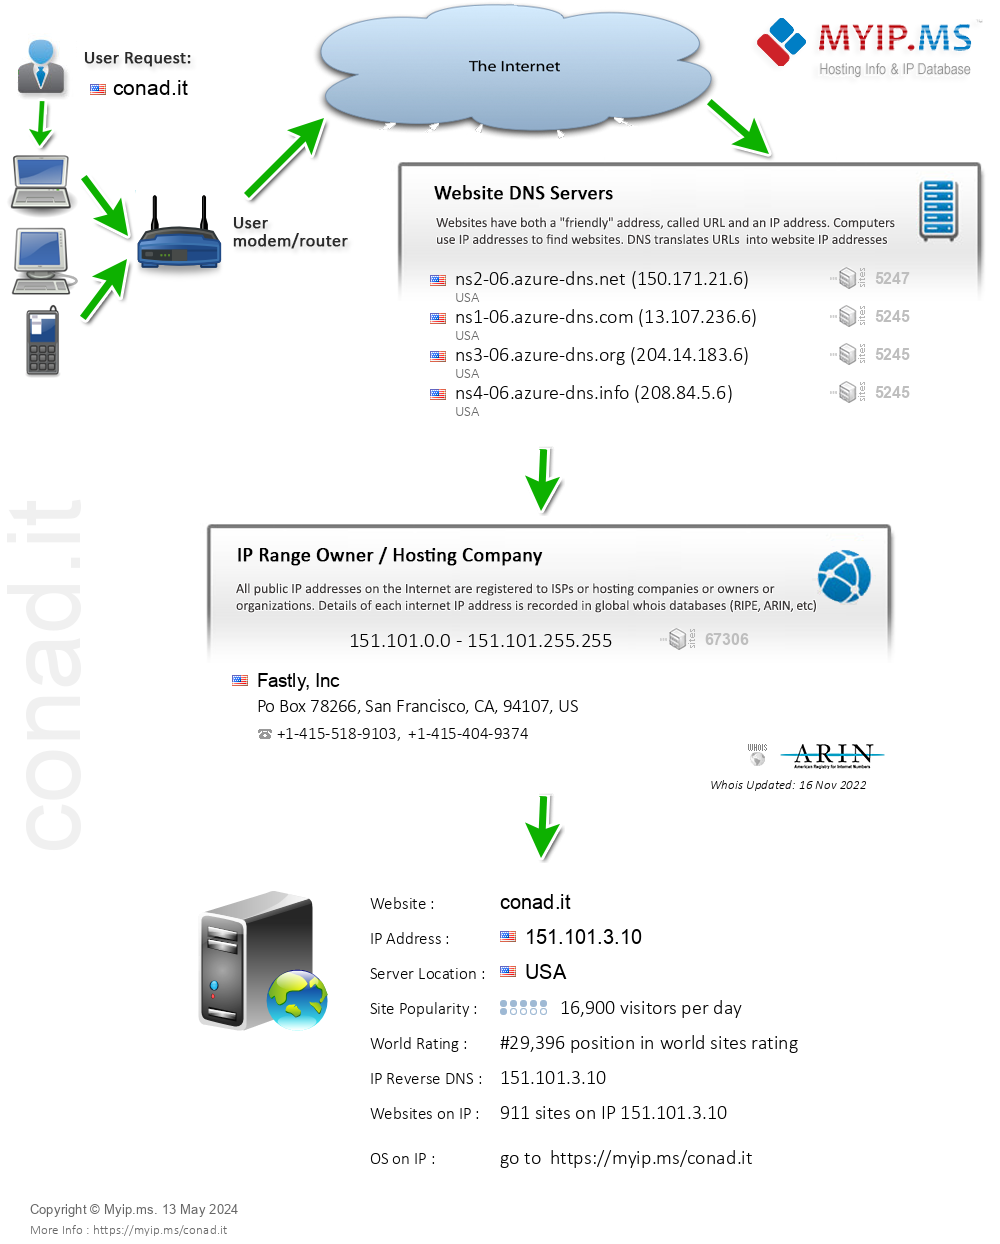 Conad.it - Website Hosting Visual IP Diagram